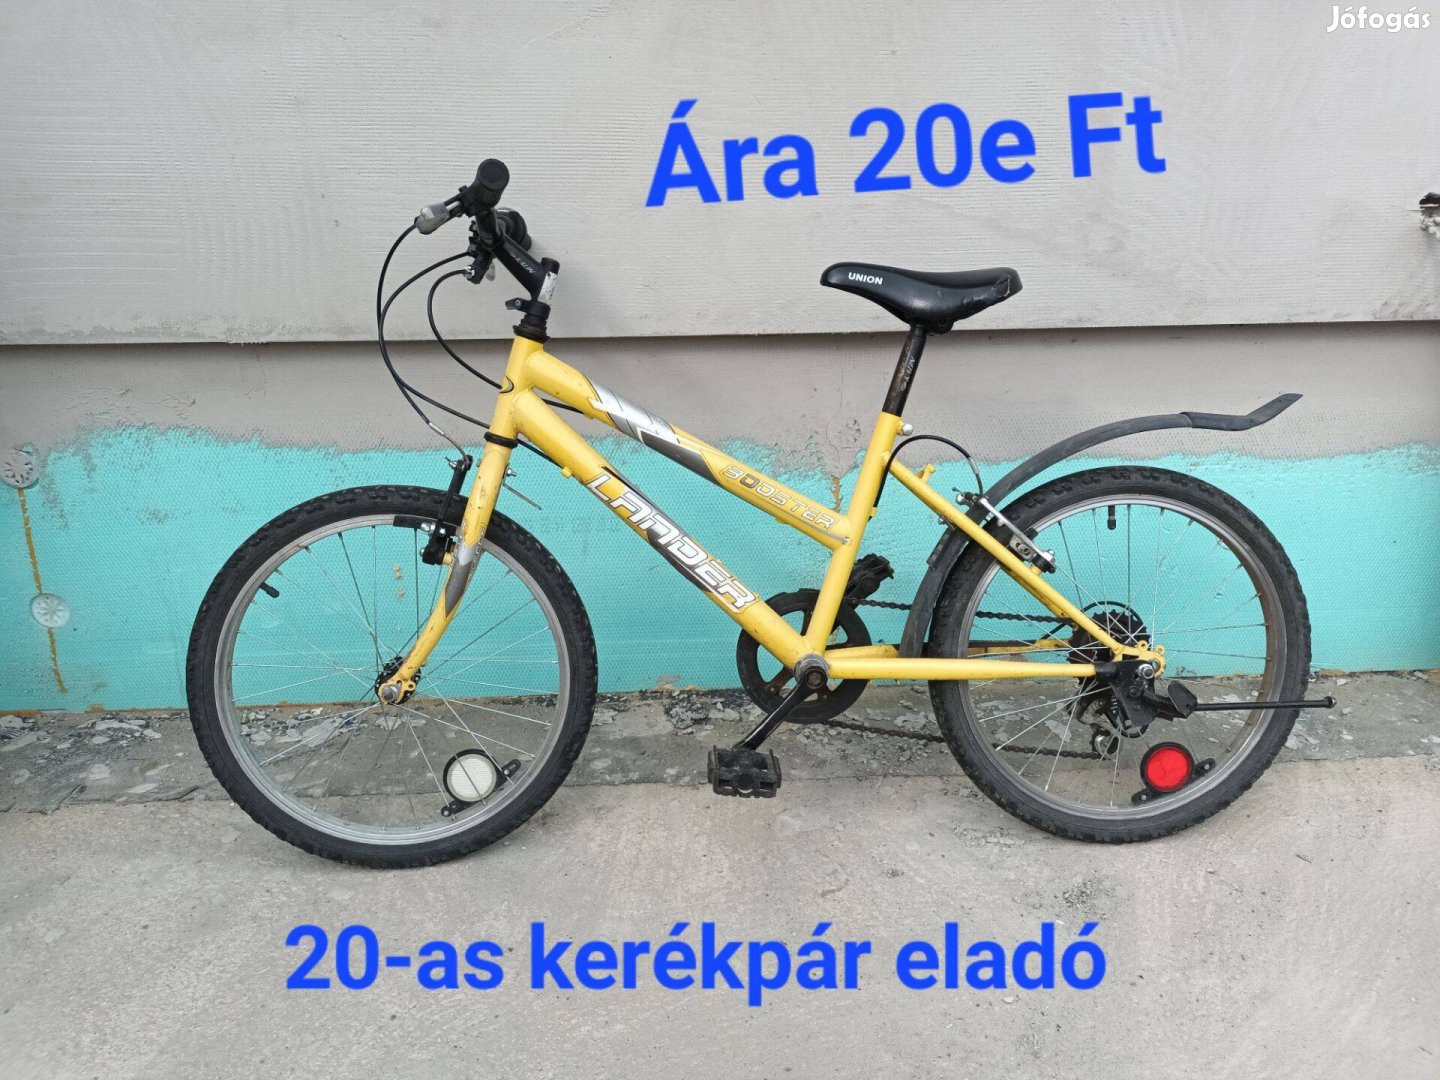 20-as kerékpár